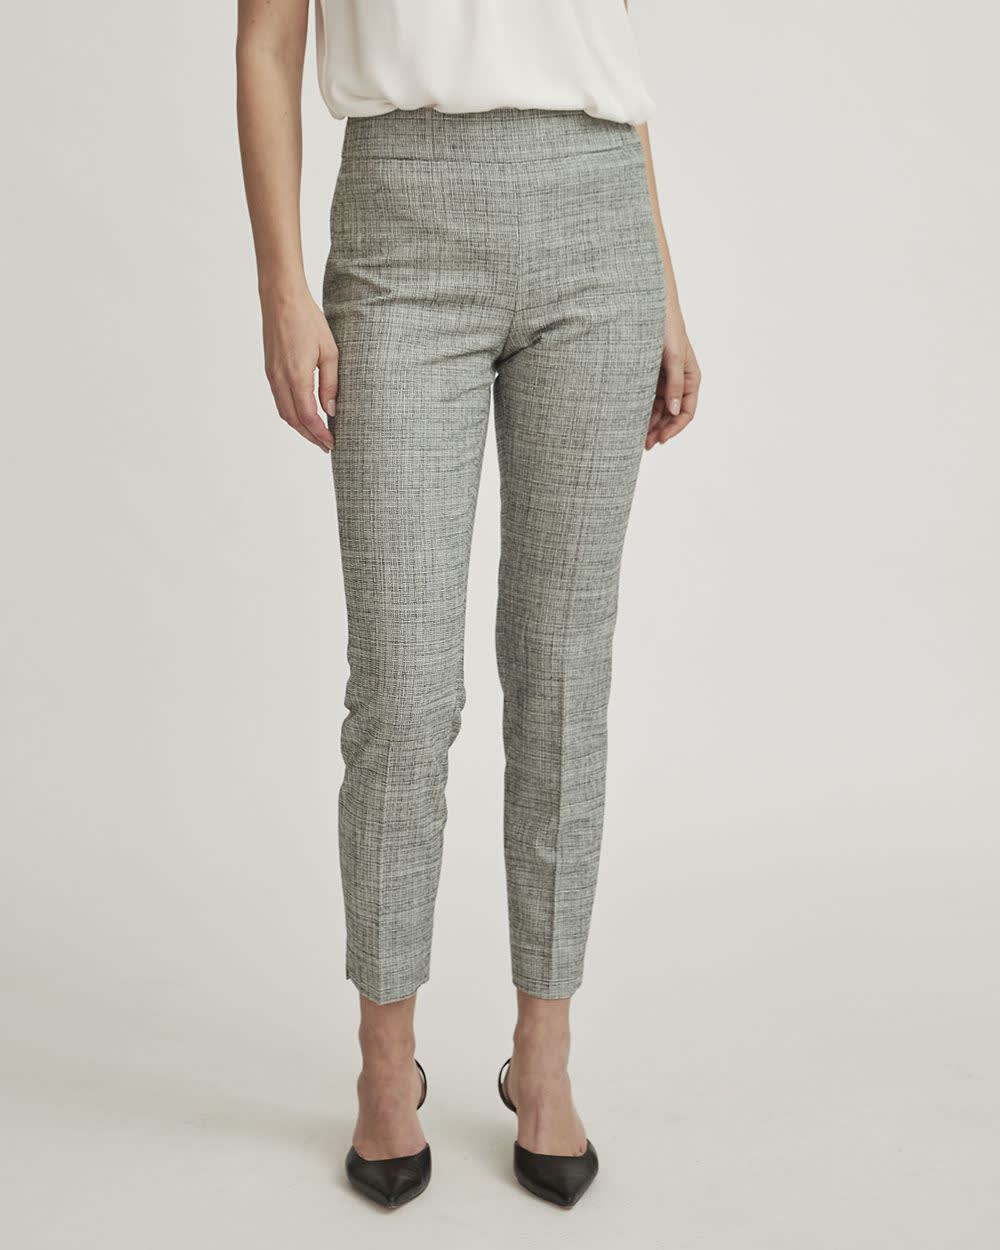 Grey Tweed Slim Ankle Pant with Side Slit - 28